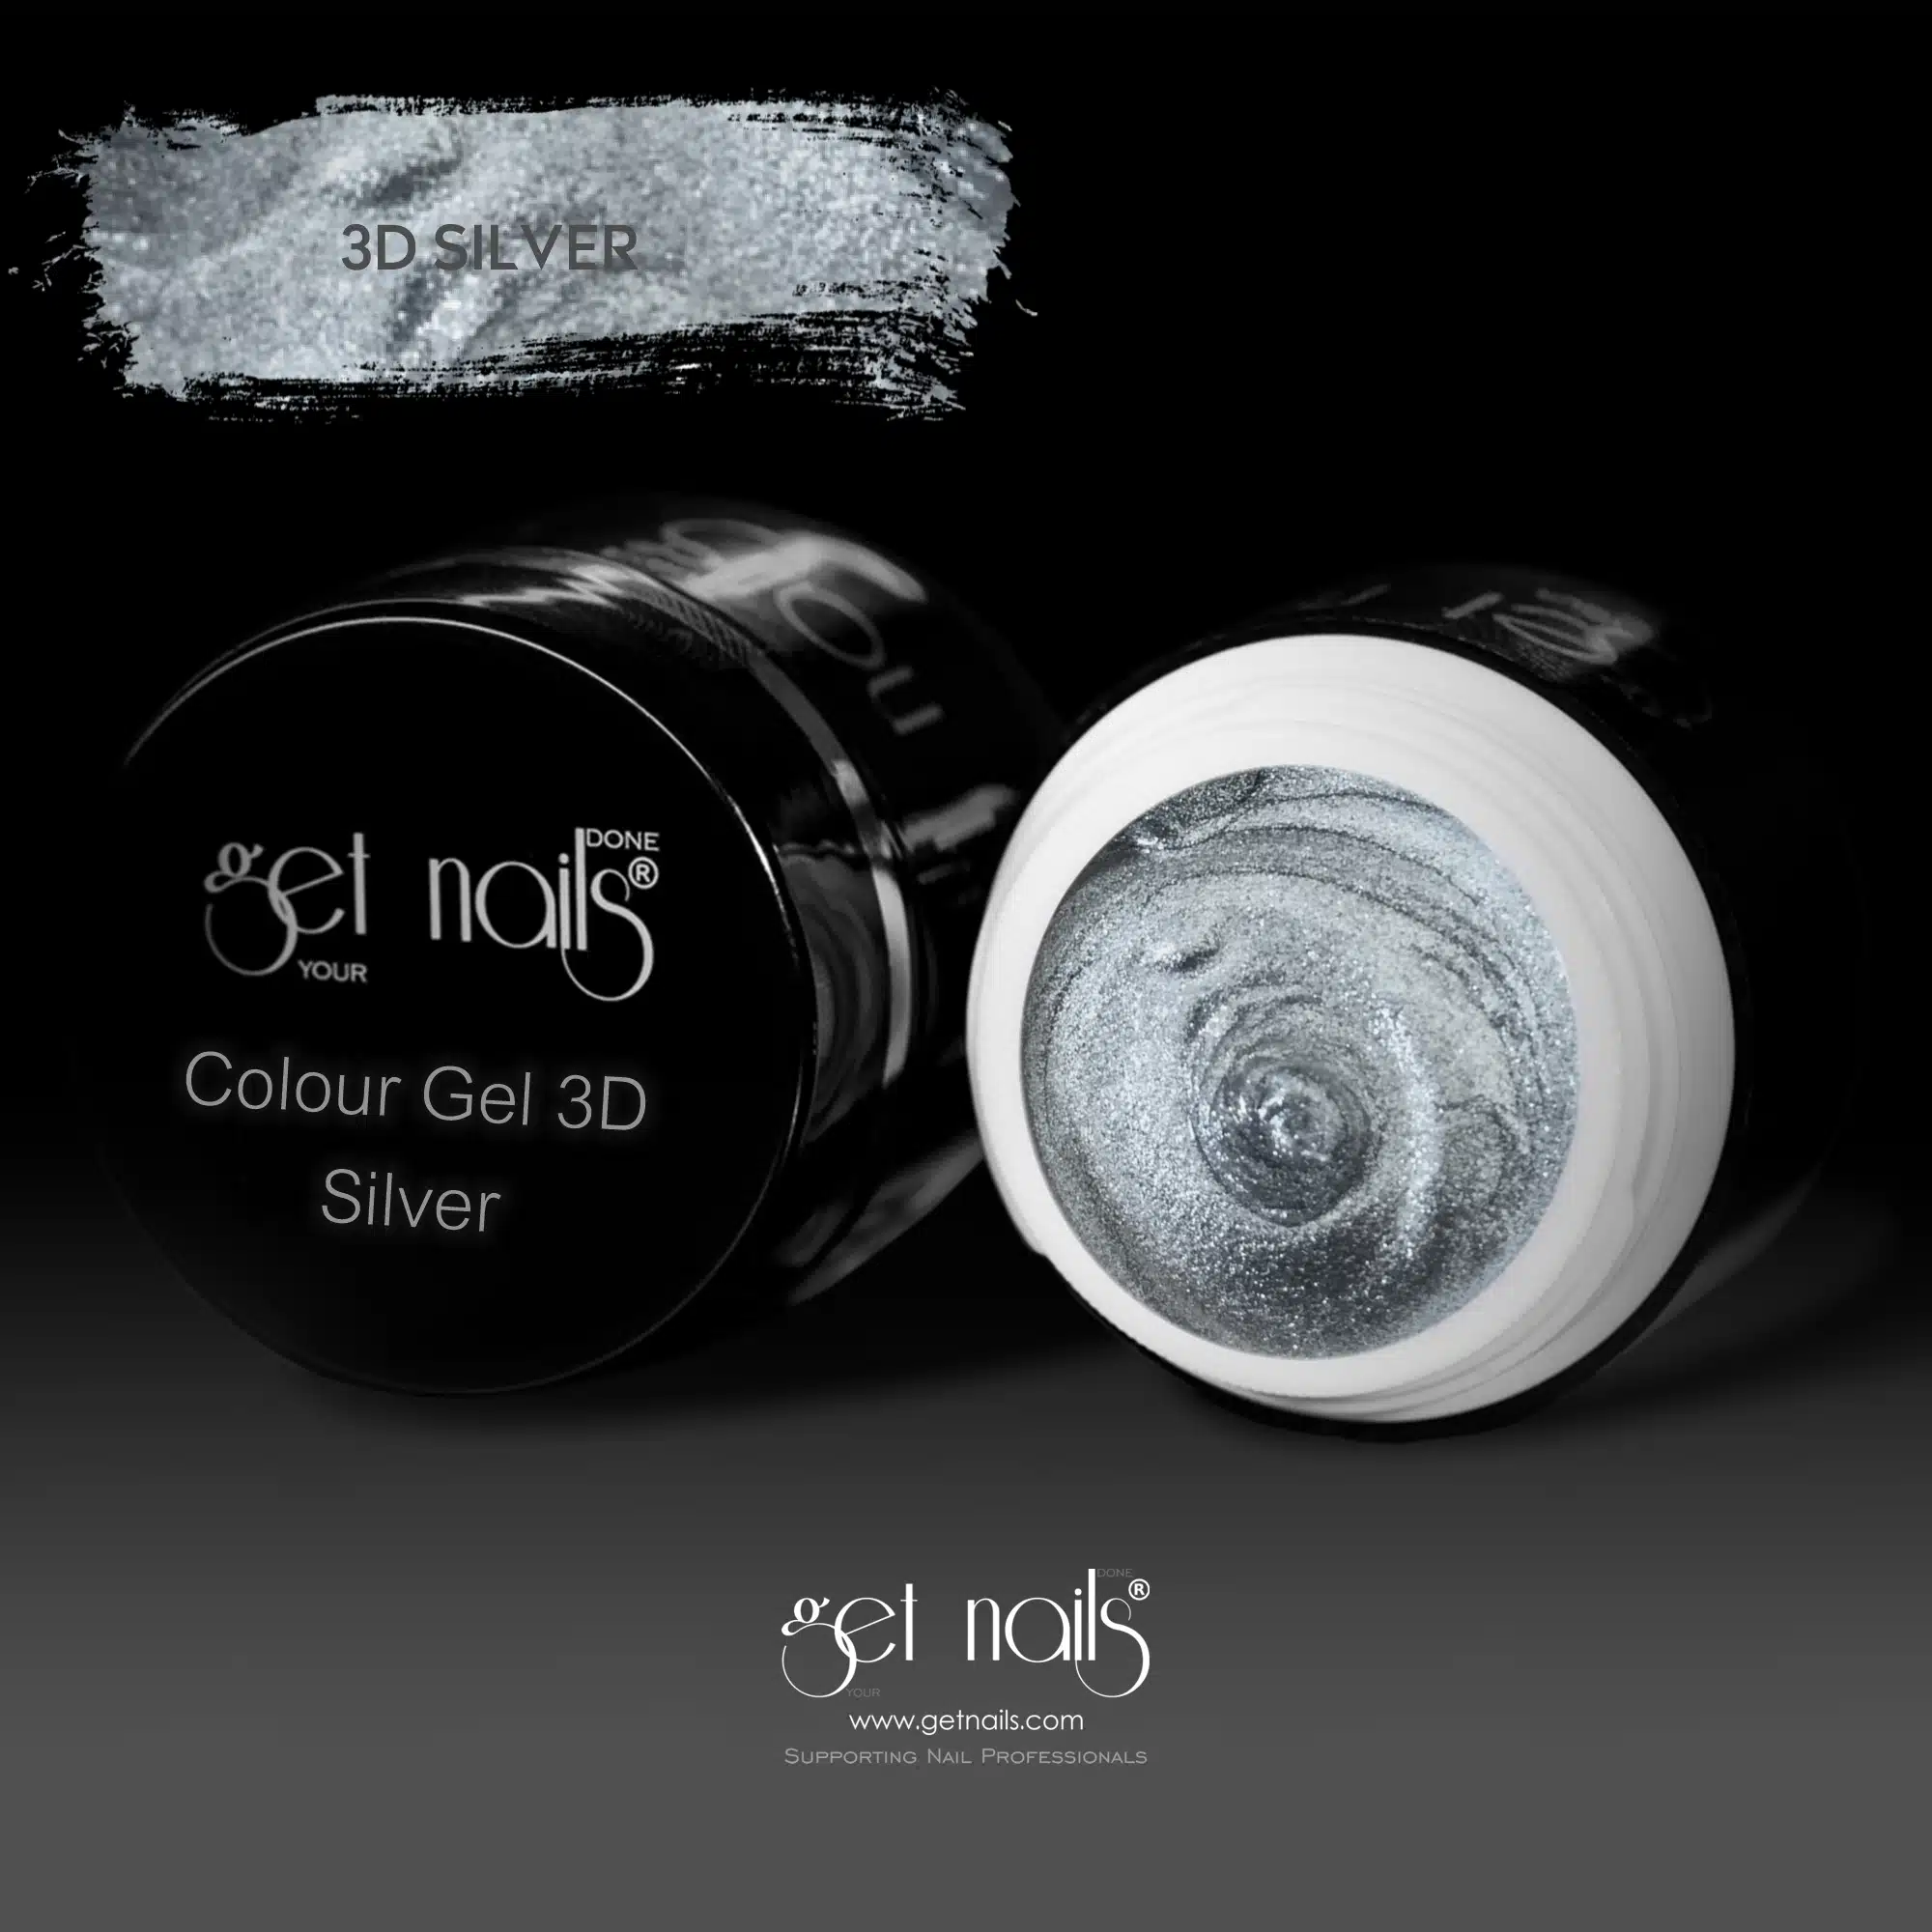 Get Nails Austria - Color Gel 3D Silver 5g